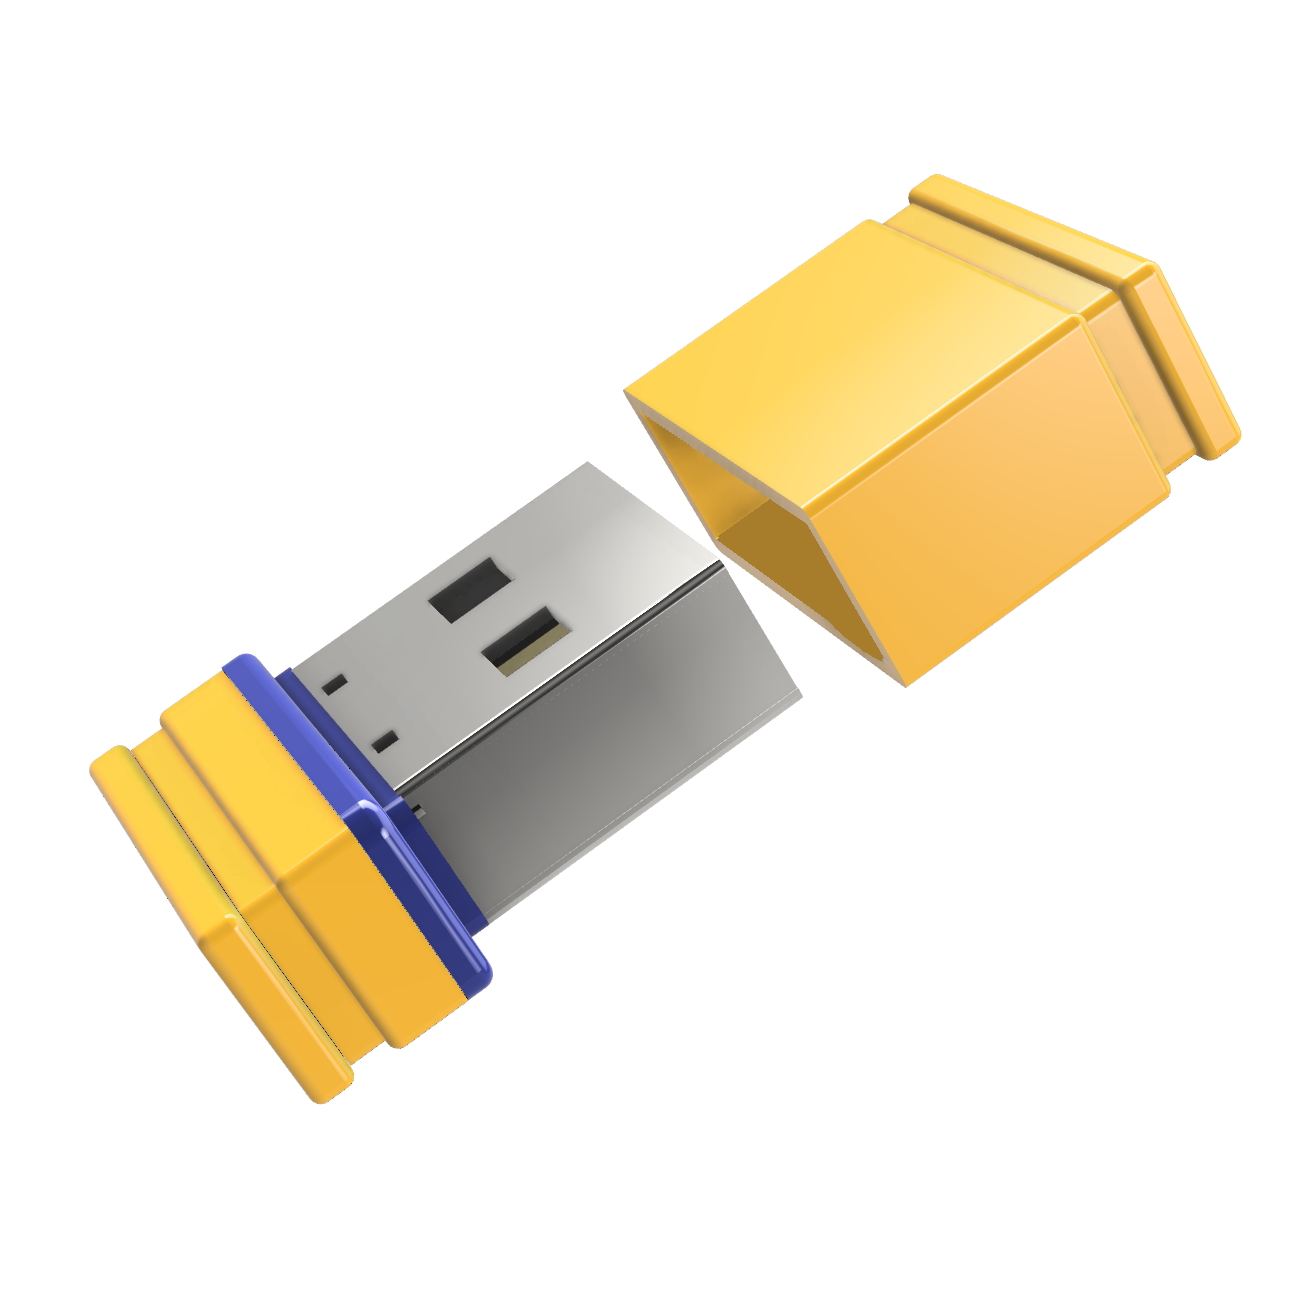 32 USB P1 USB-Stick (Gelb/Blau, Mini GB) GERMANY ®ULTRA